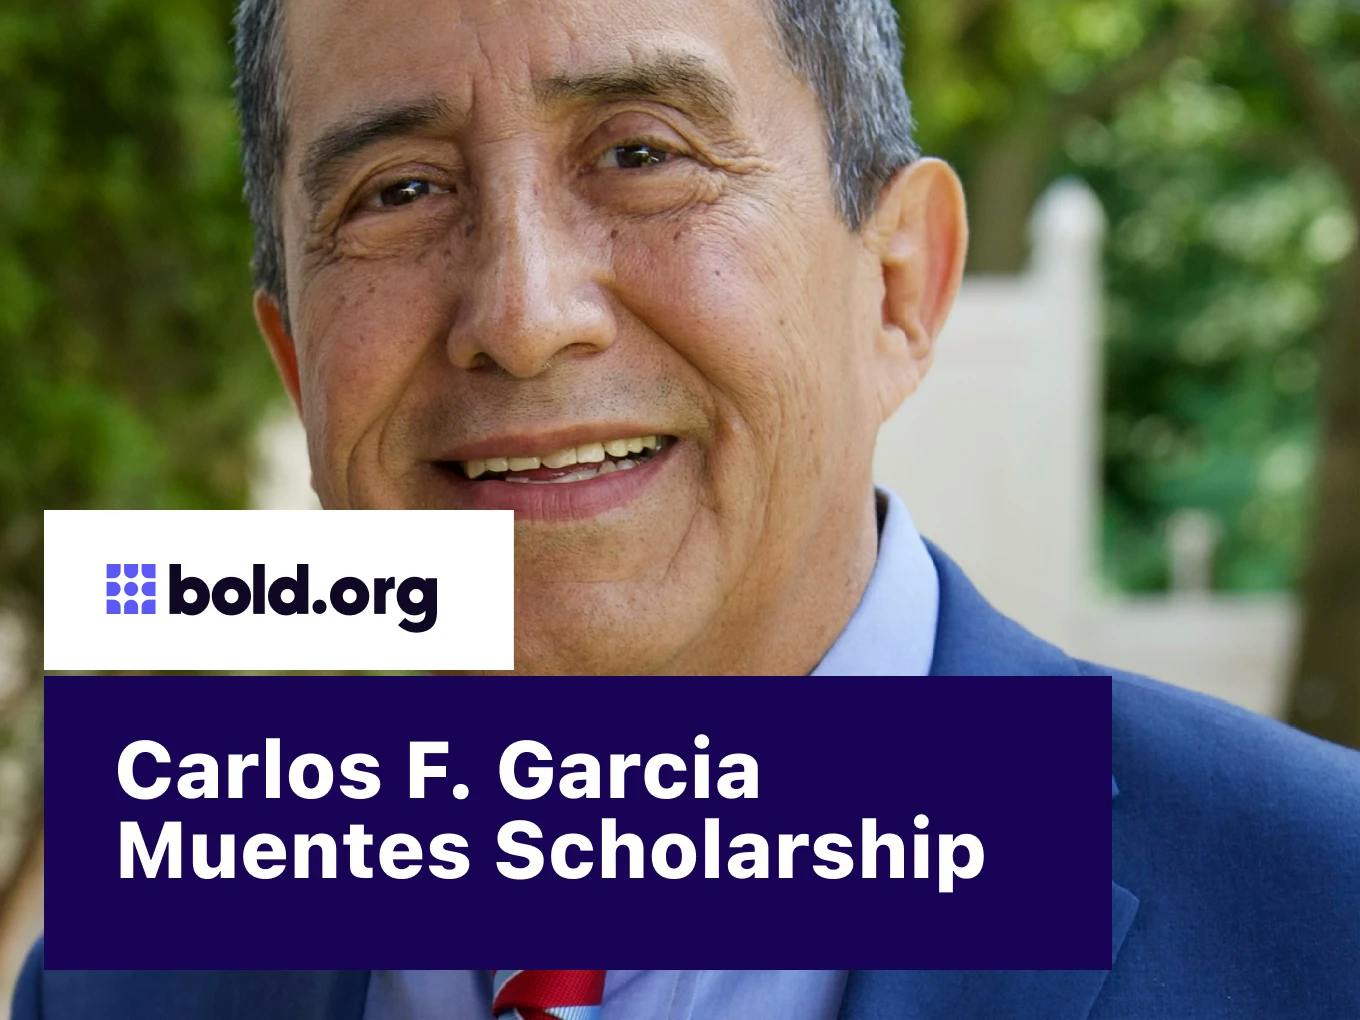 Carlos F. Garcia Muentes Scholarship